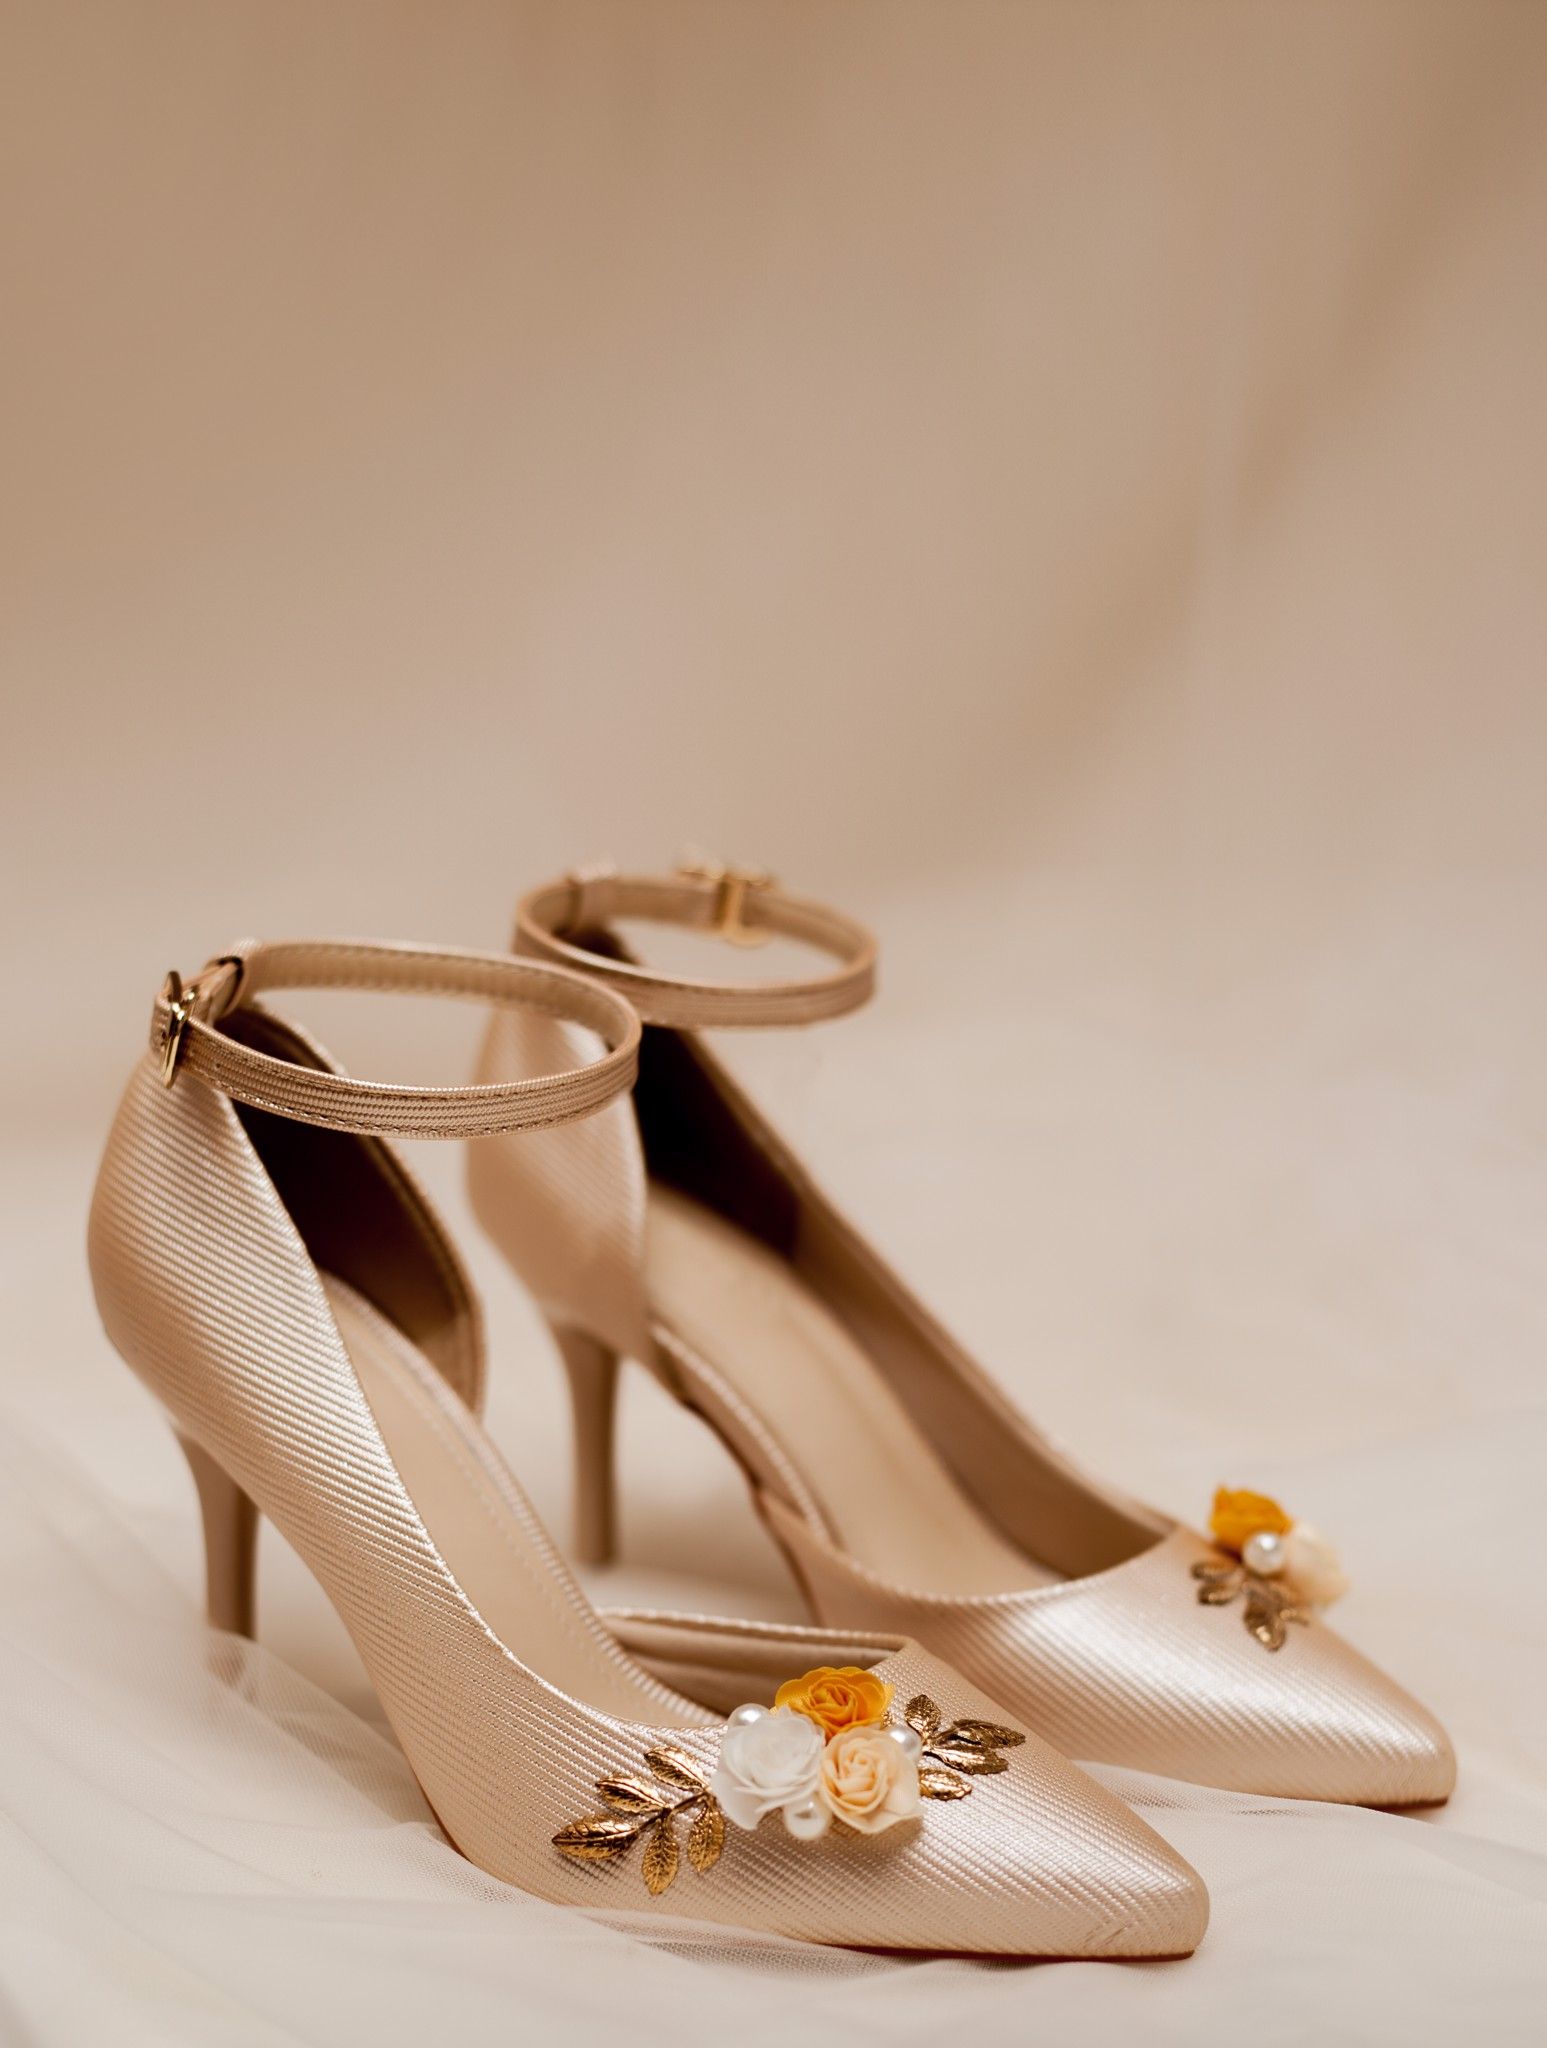  Giày Cưới Cao Gót H88.03 3 Hoa Lá Vàng 